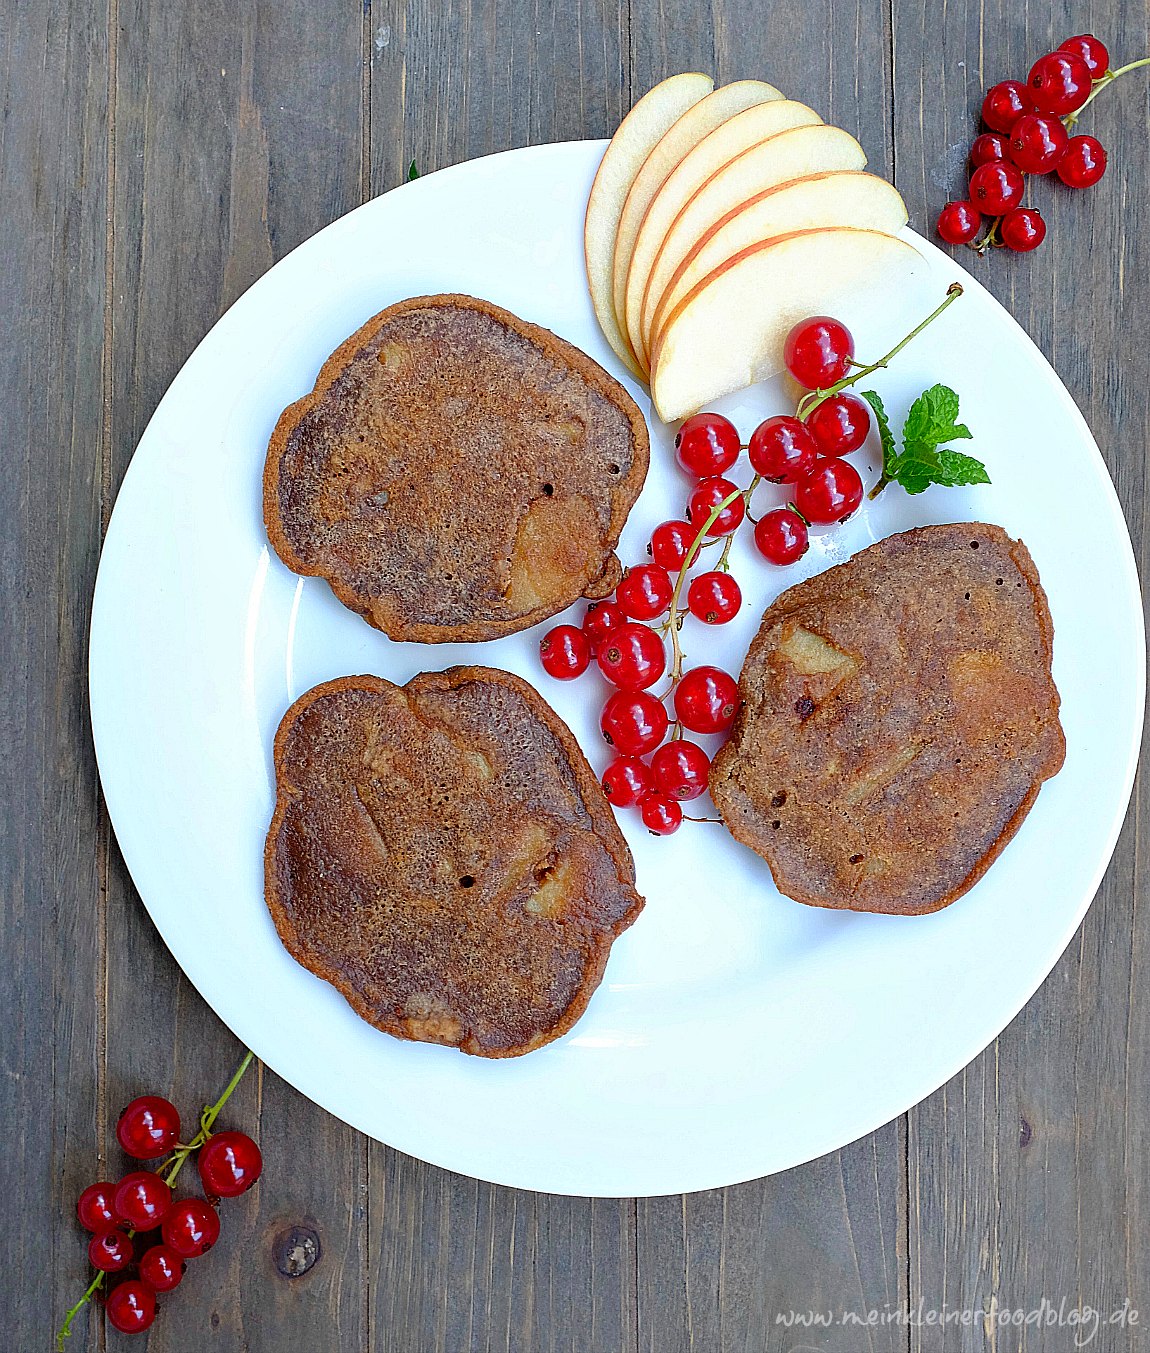 Schoko-Apfelküchlein schmecken wunderbar schokoladig und sind ein perfekter Snack für das Vesper. Sie sind glutunfrei und nur wenig gesüßt. Ein leckerer Snack.